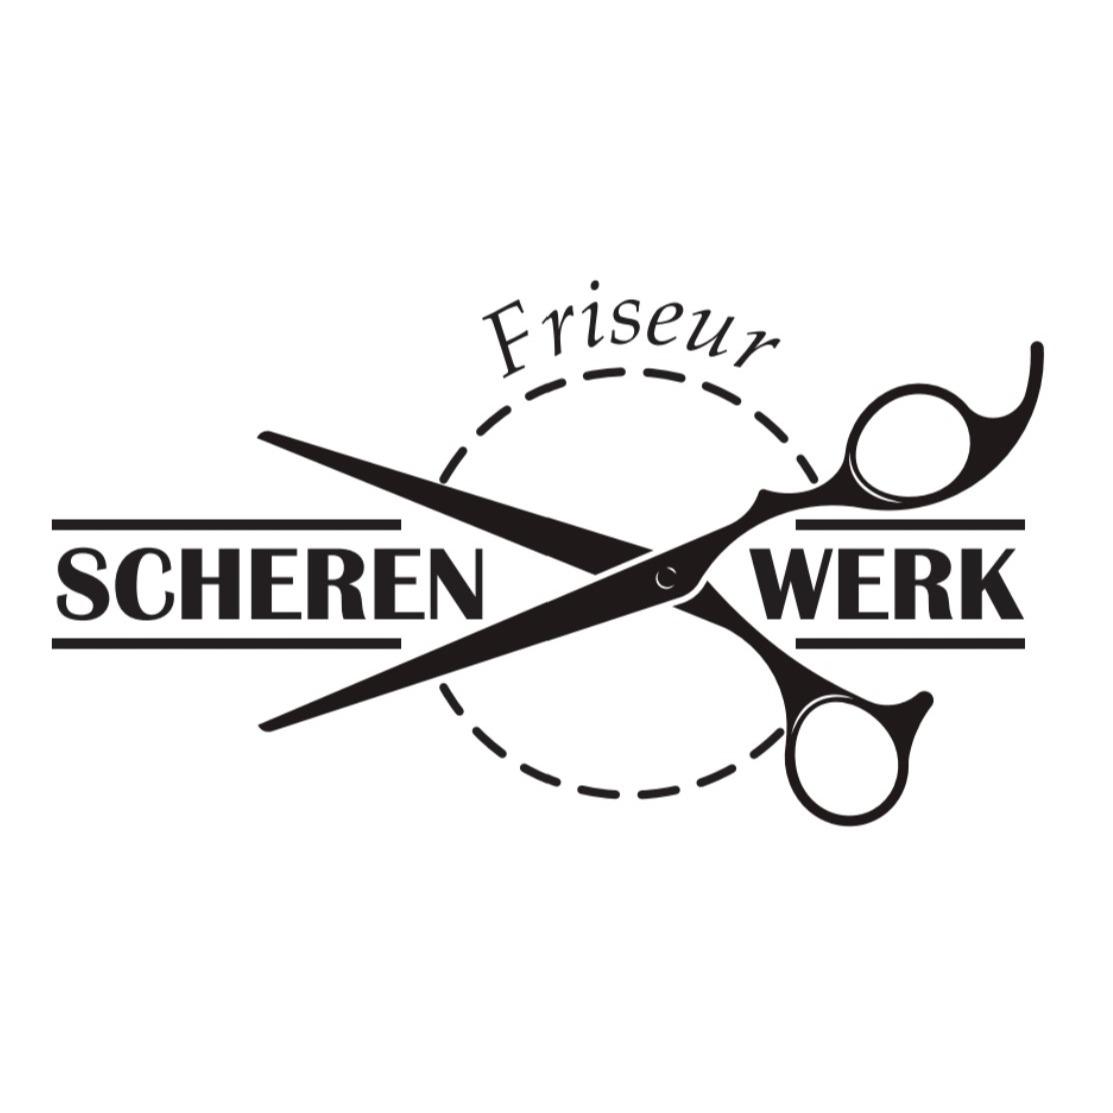 Friseur Scherenwerk Logo